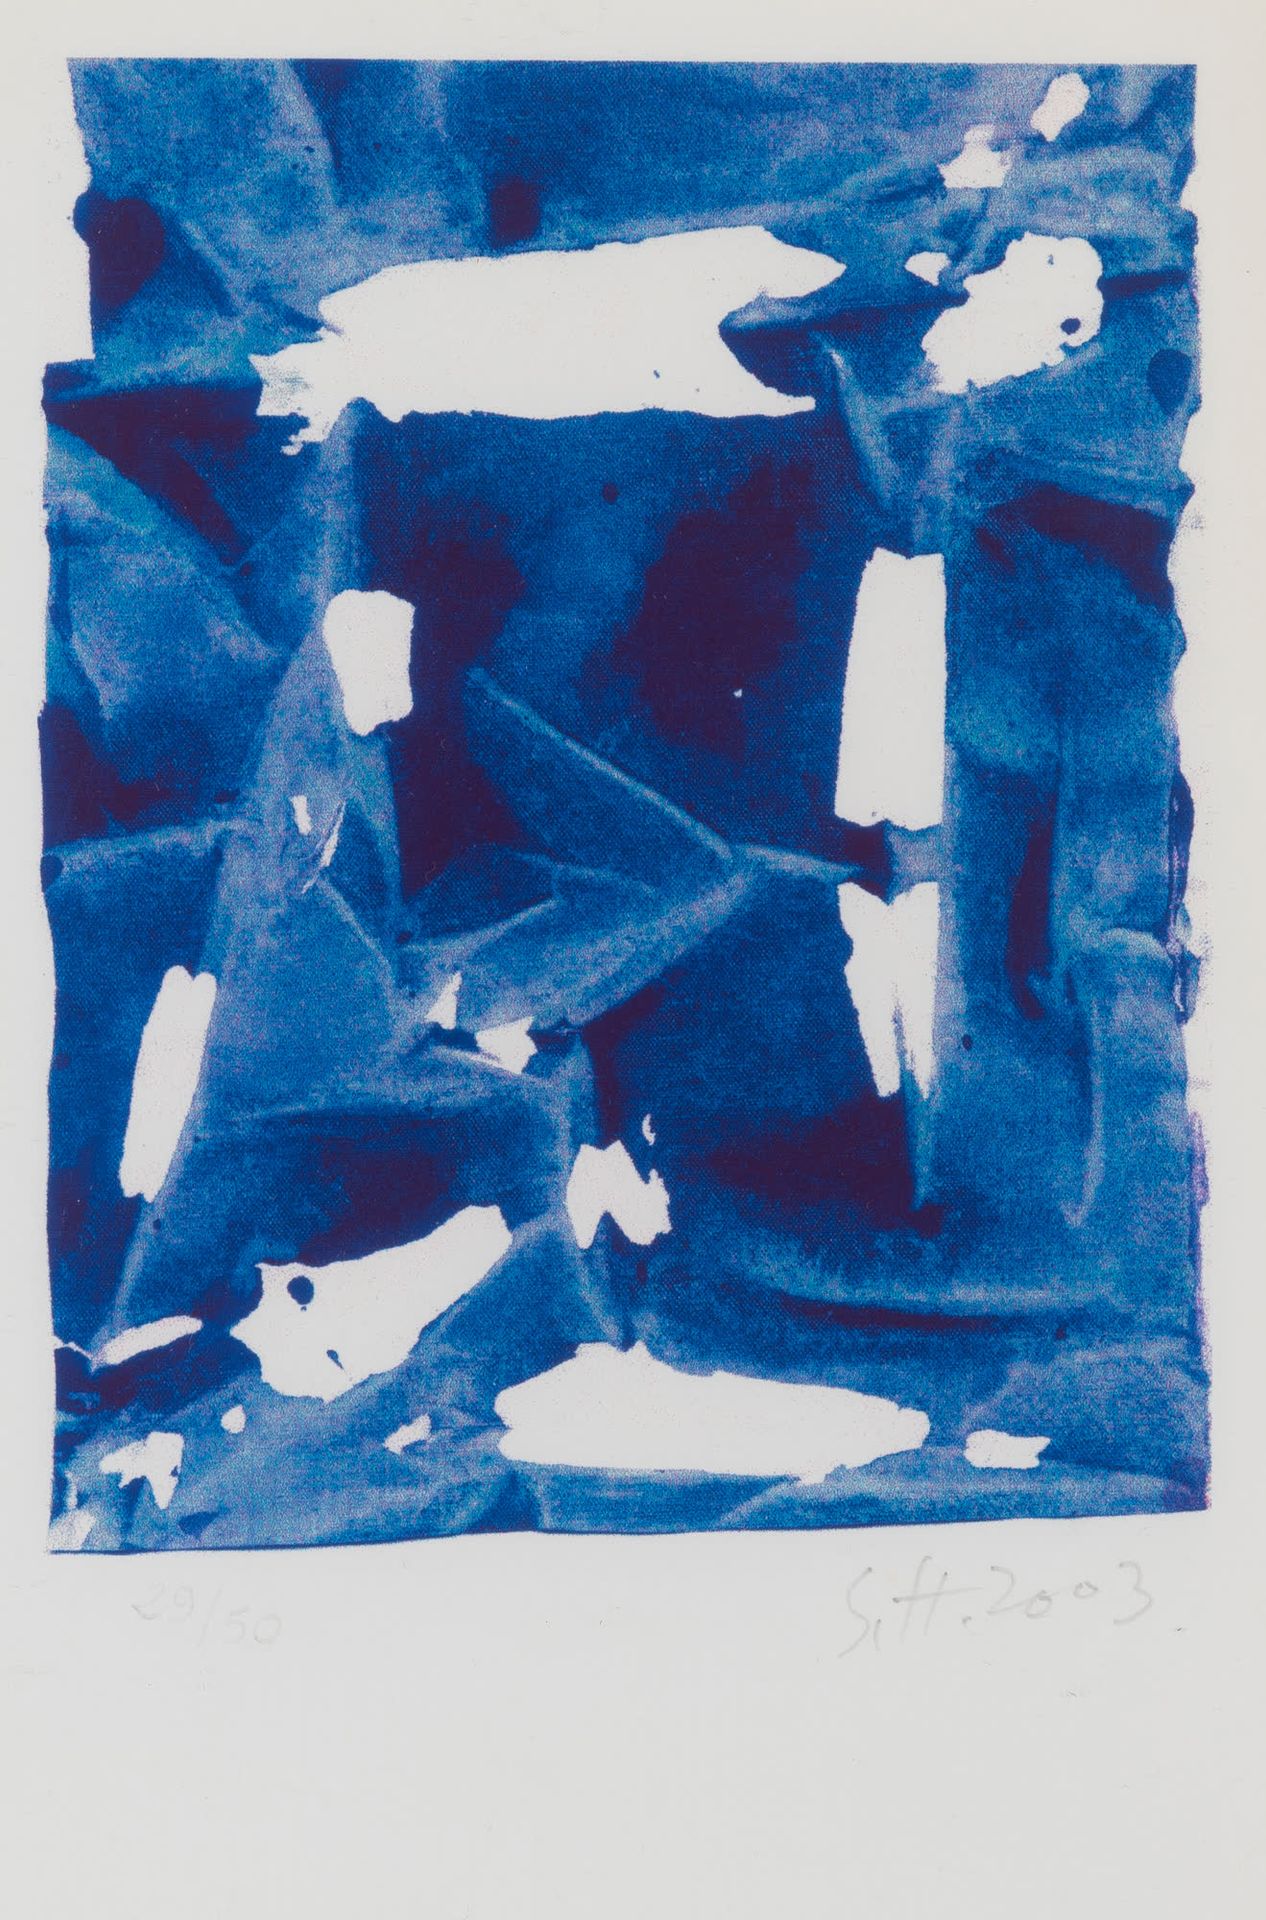 Simon HANTAI (1922-2008) Composición azul, 2003.
Serigrafía en color.
Firmado y &hellip;